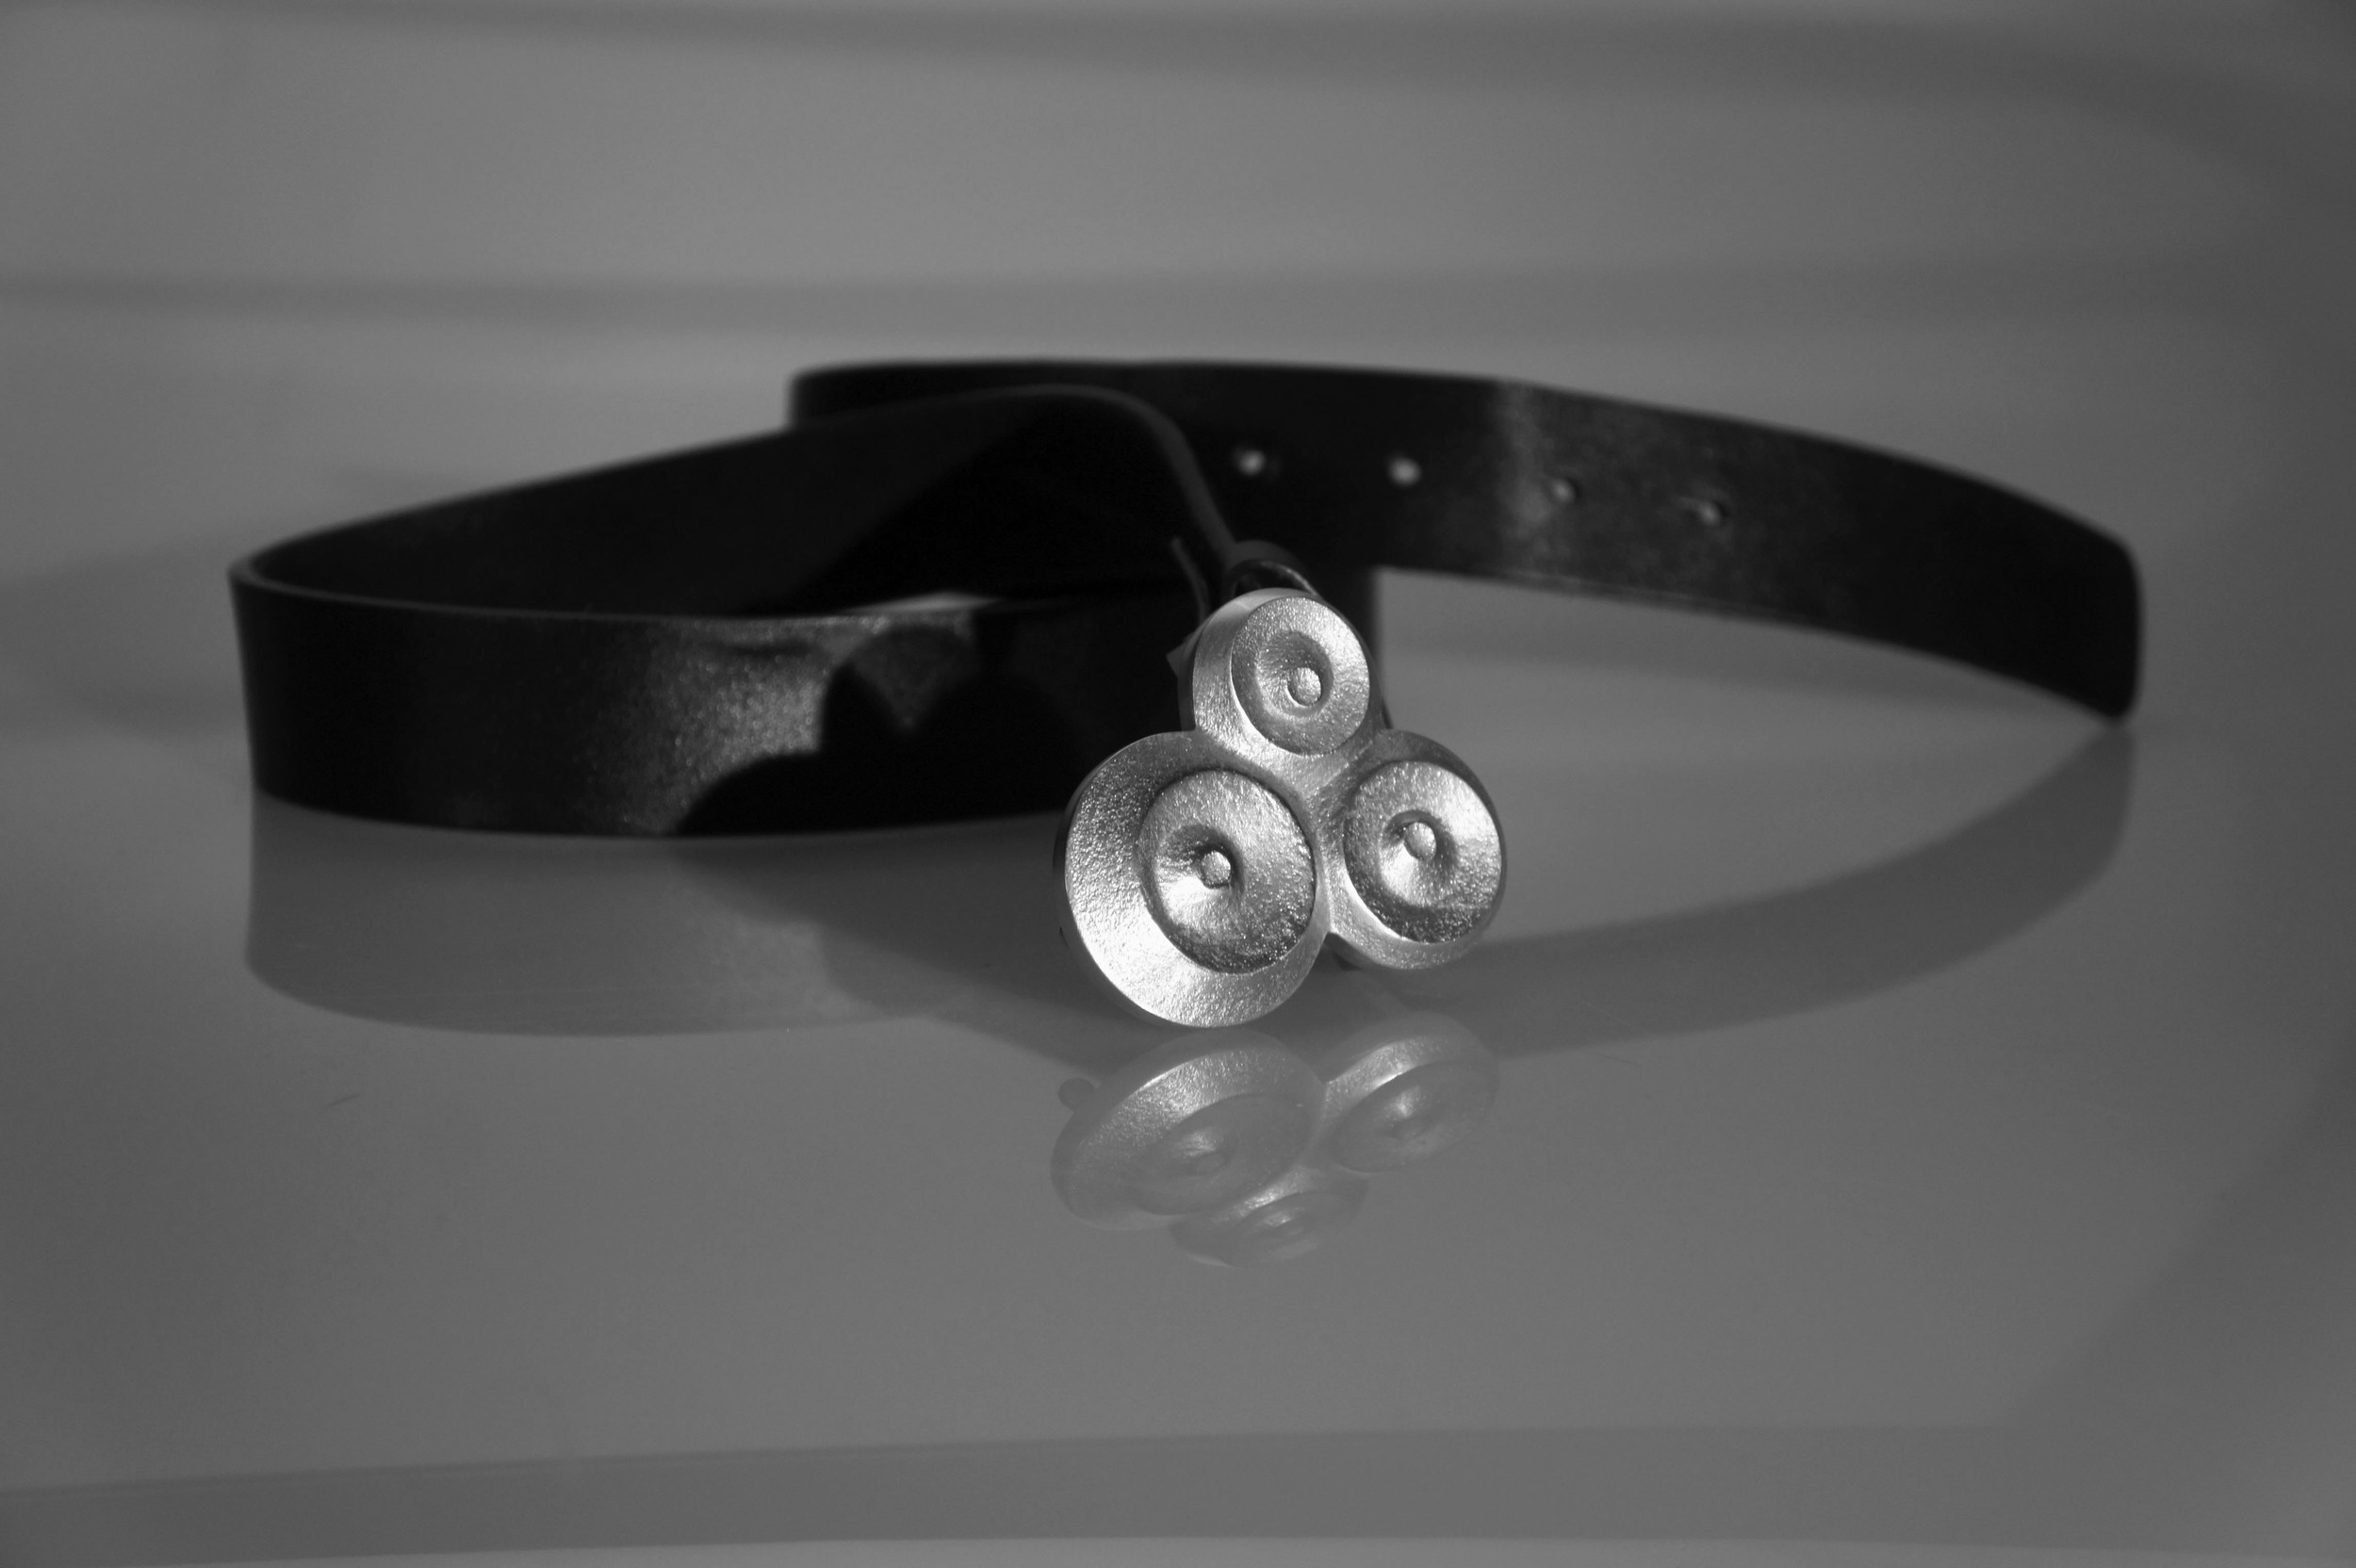  Cast aluminum belt buckle &nbsp;| &nbsp;Winter 2012 